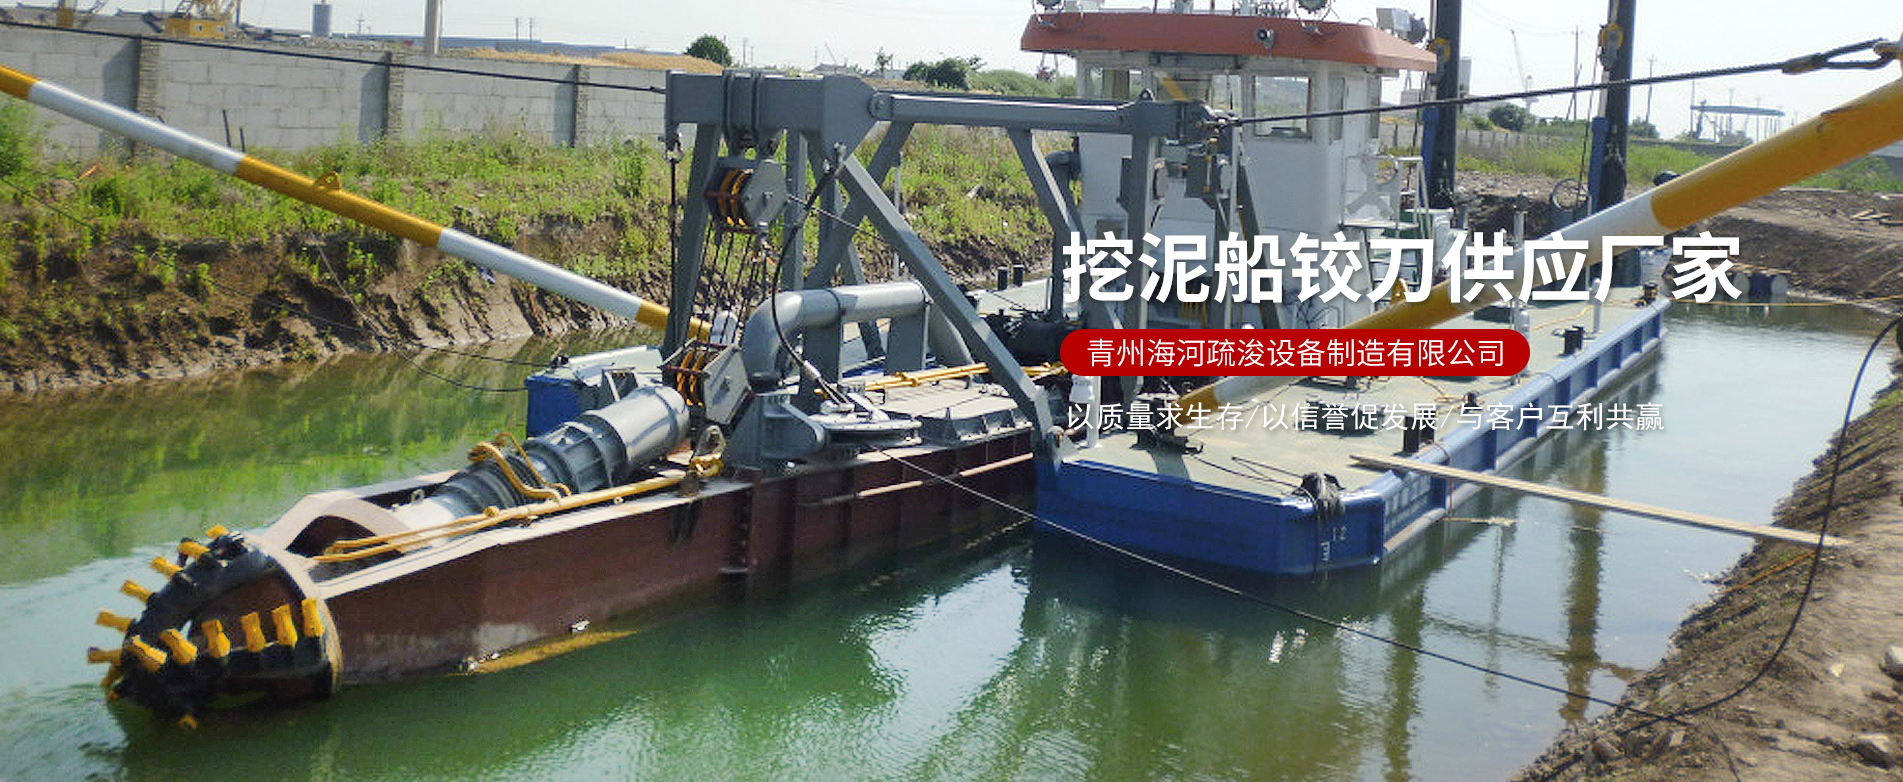 青州海河疏浚設備制造有限公司